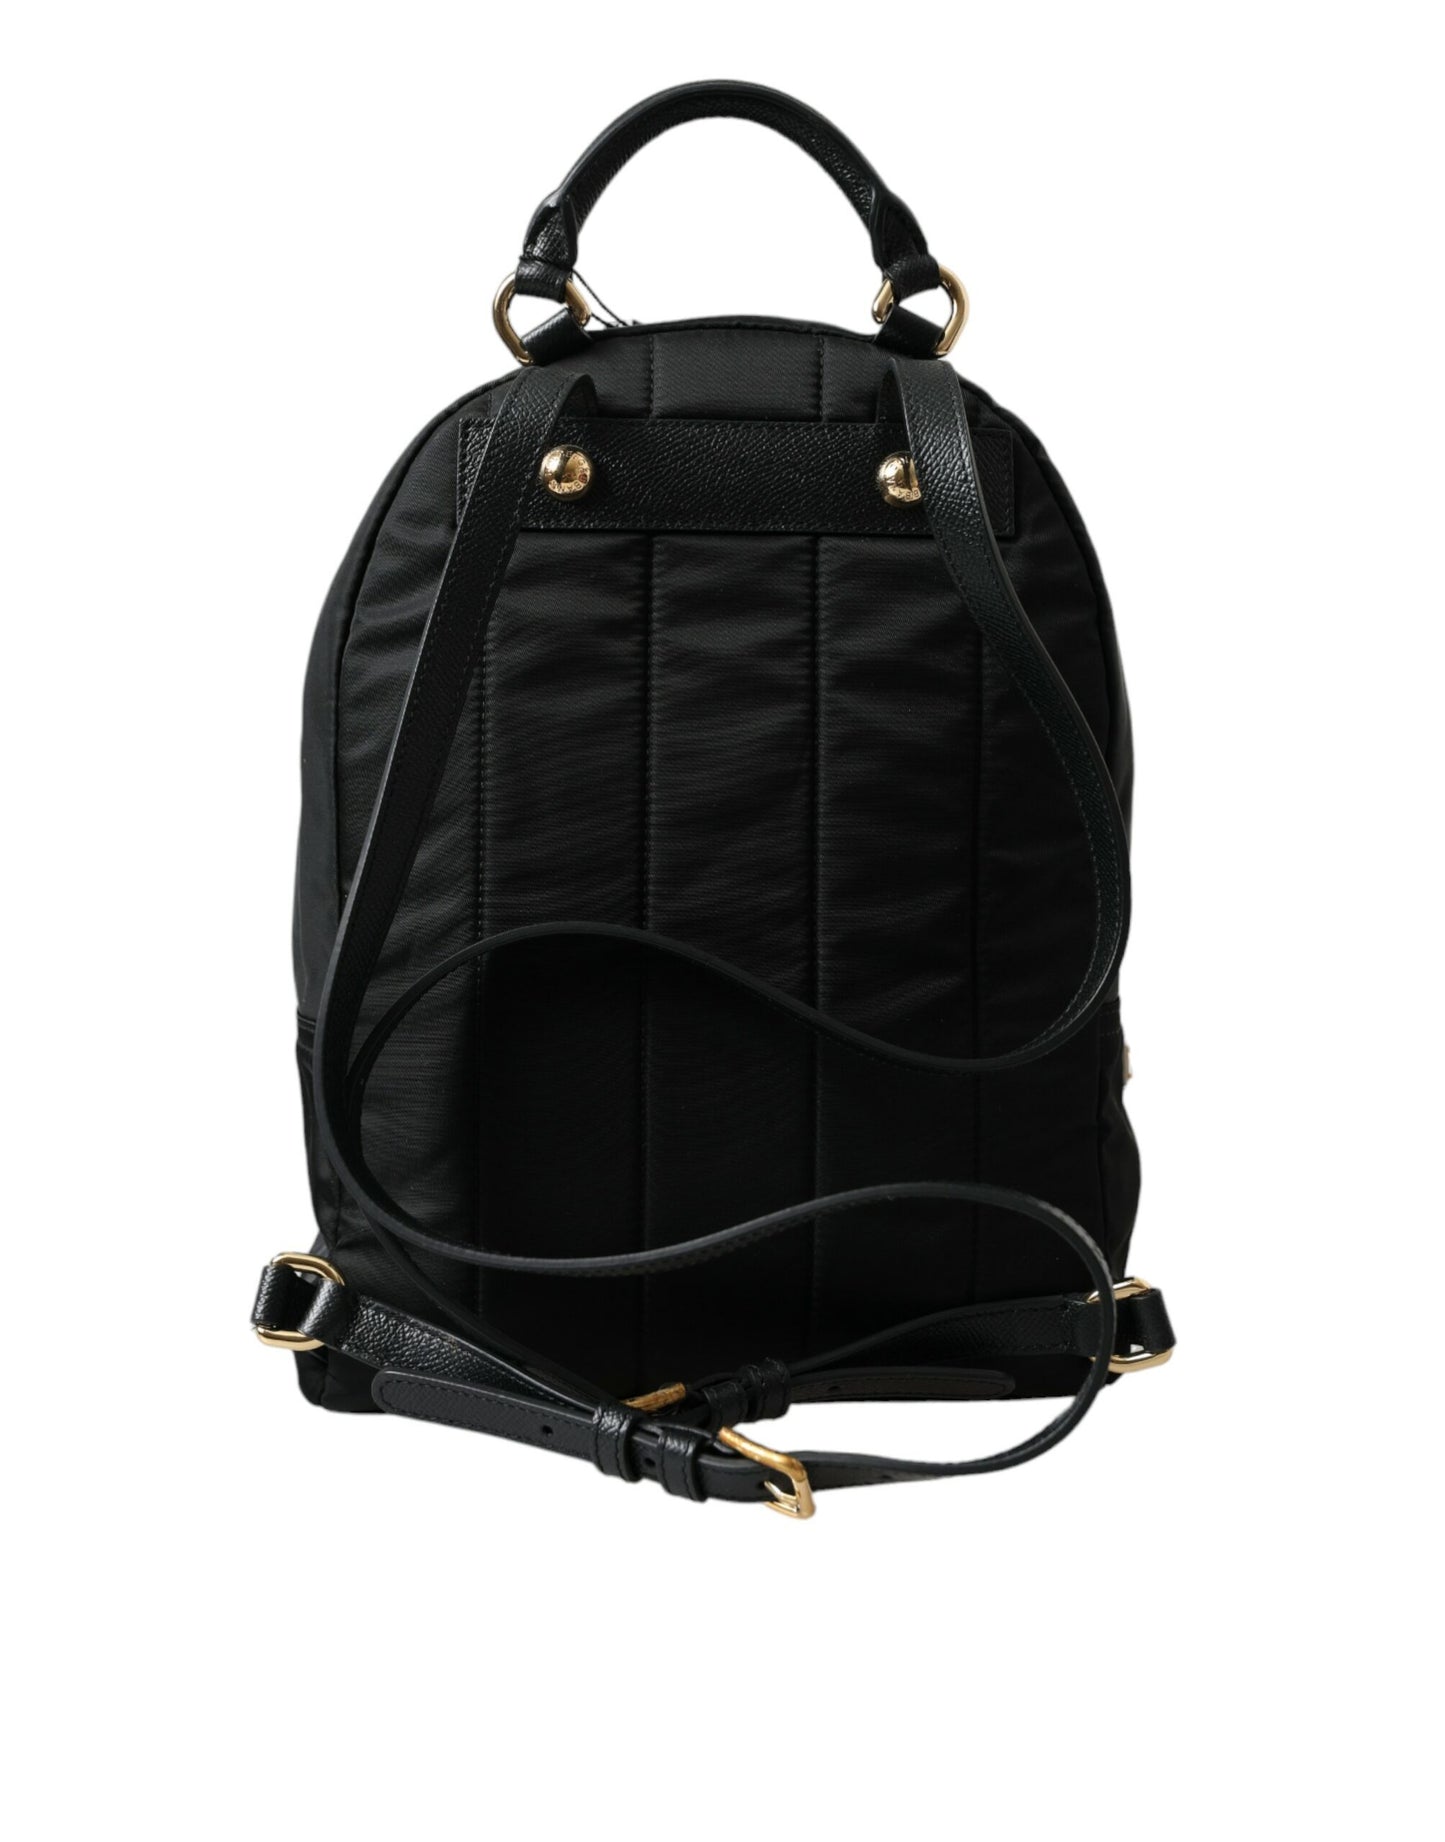 Dolce & gabbana embellished black backpack